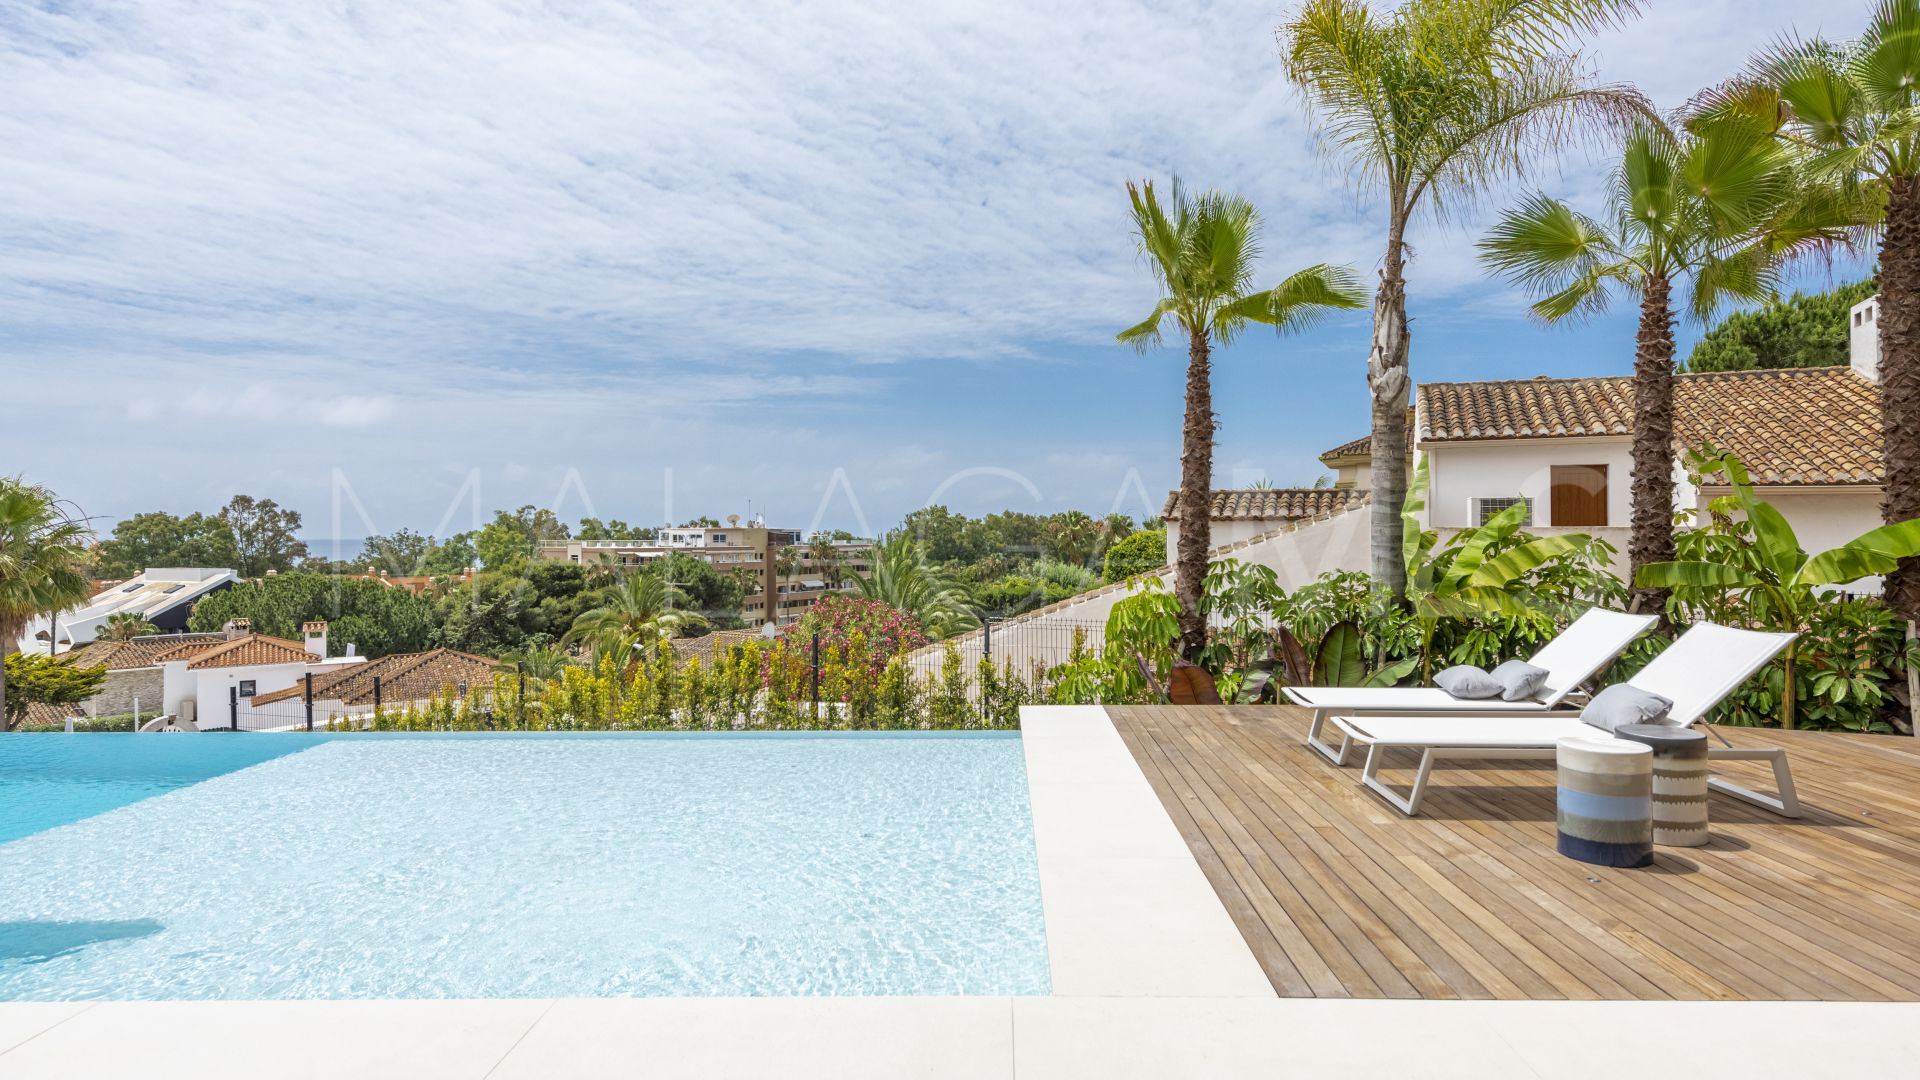 Buy villa in Carib Playa with 5 bedrooms